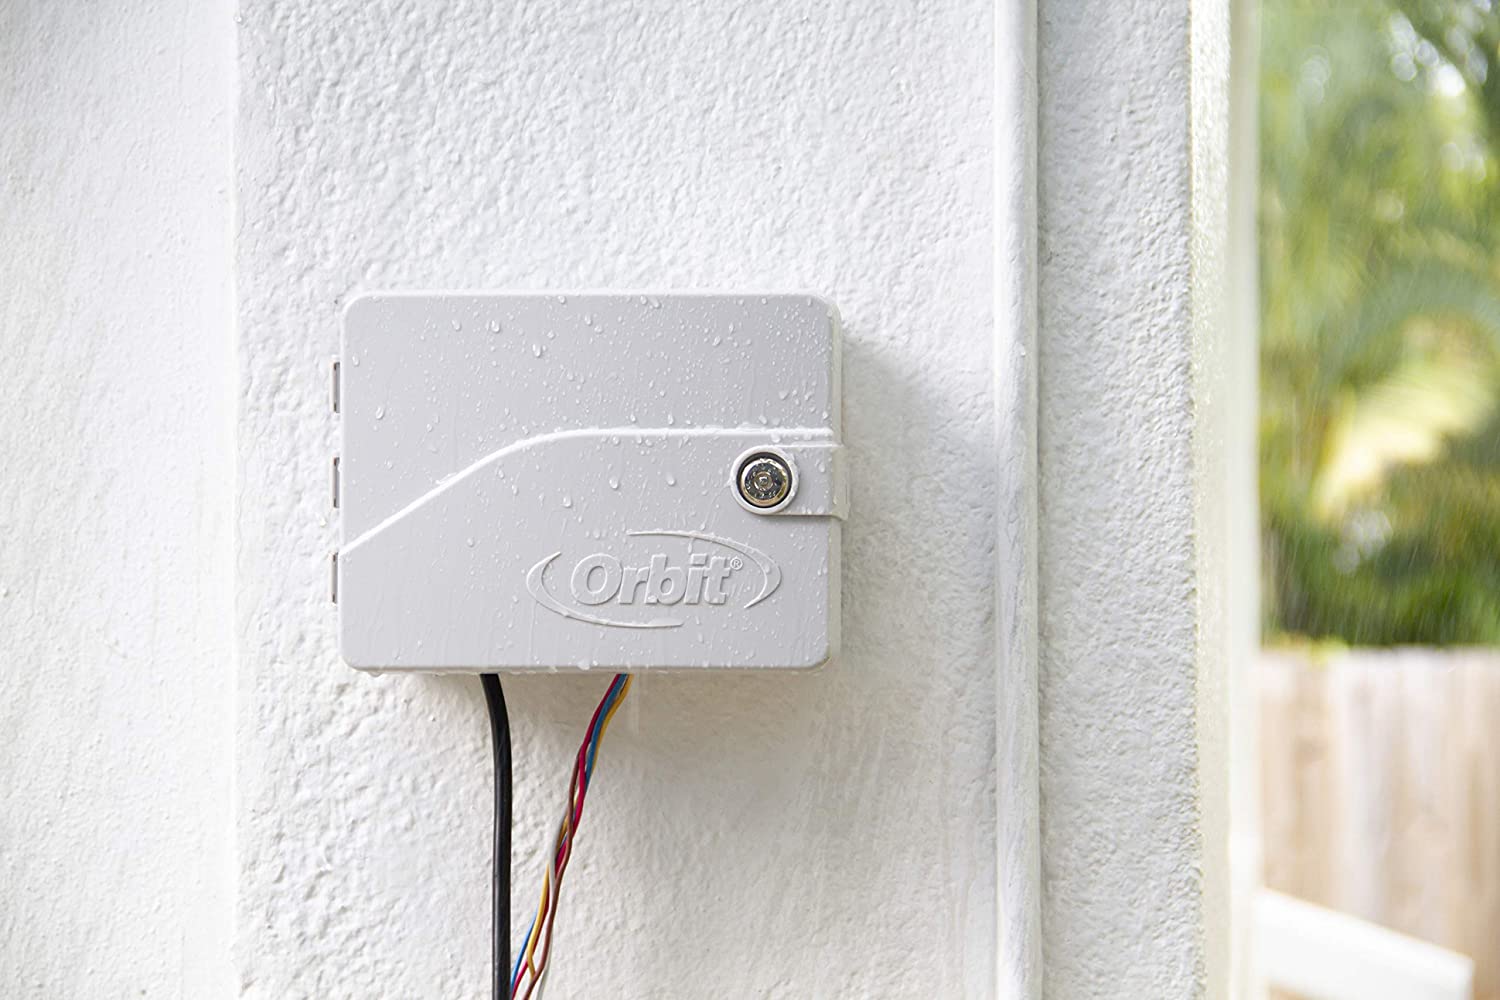 Orbit 57946 B-hyve Smart 6-Zone Indoor/Outdoor Sprinkler Controller, Compatible with Alexa, 6 Station,Grey